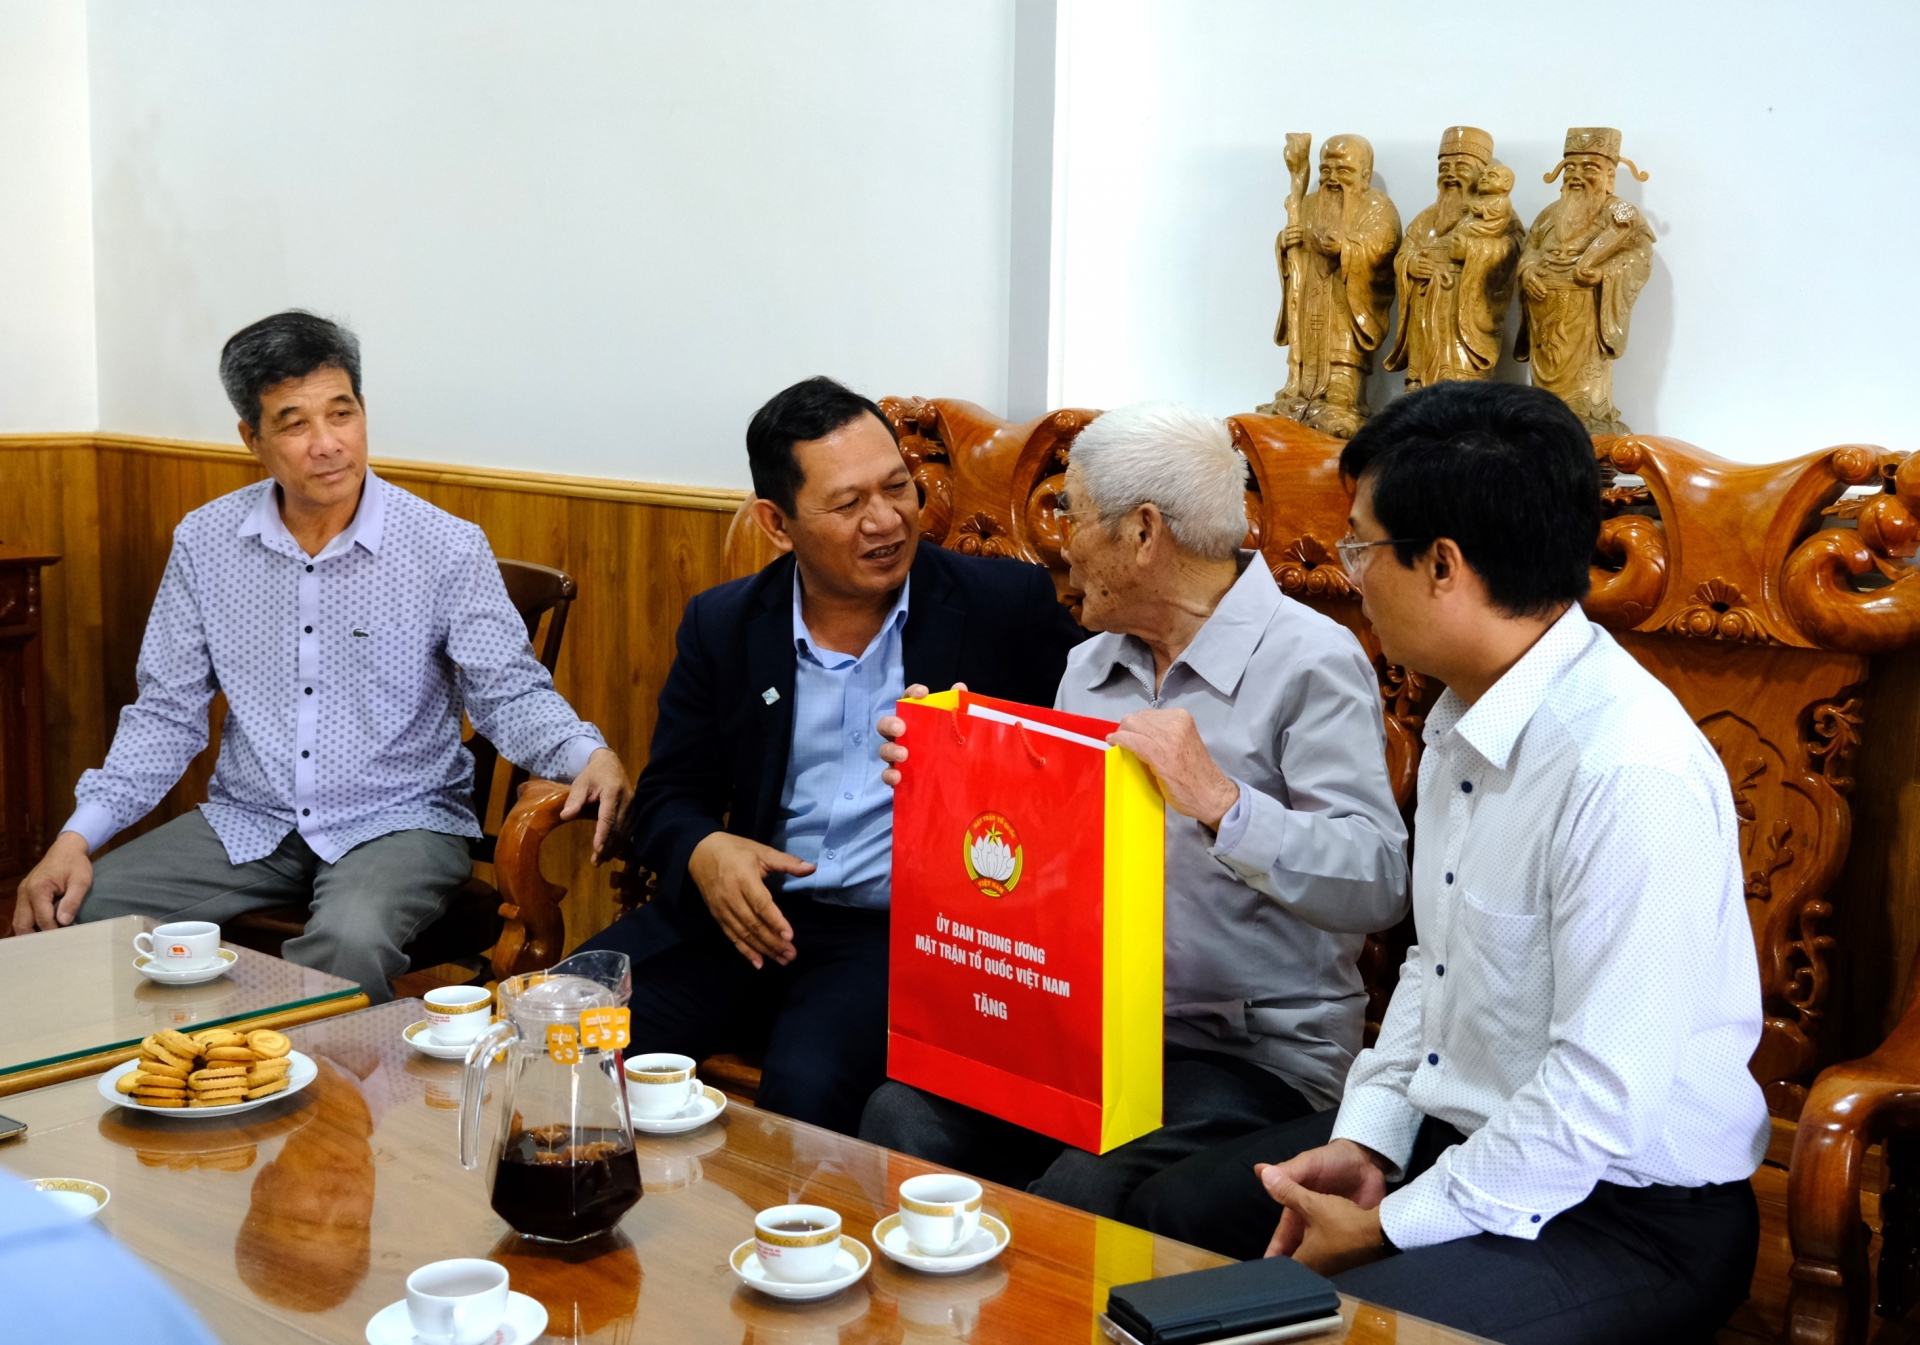 Đoàn công tác lắng nghe cựu chiến binh Nguyễn Hữu Thu chia sẻ về những ký ức trong Chiến dịch Điện Biên Phủ